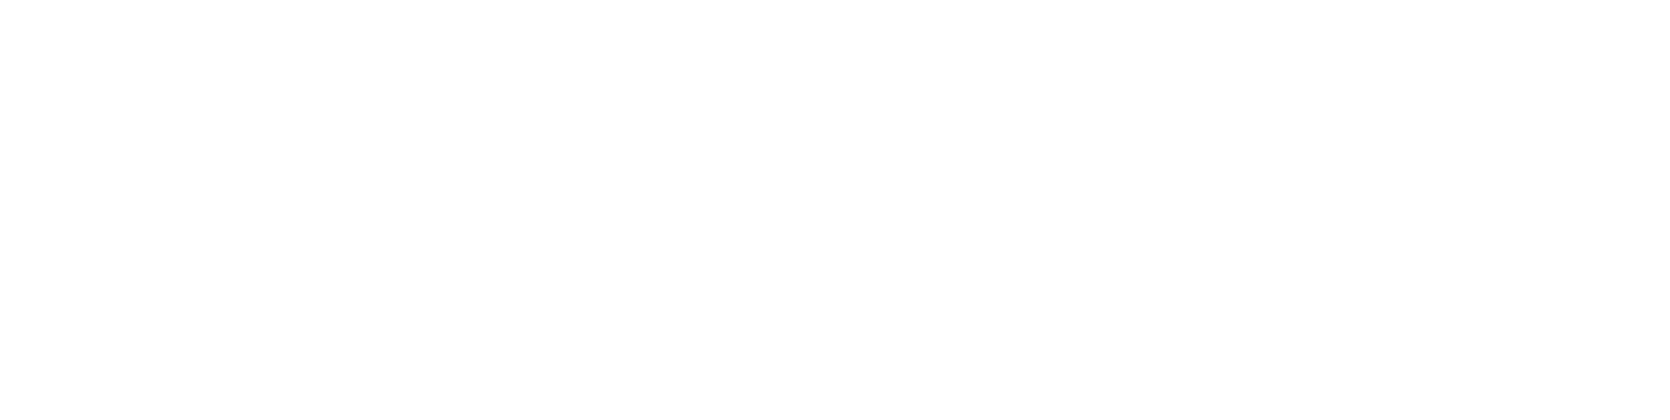 storiesonbard logo full white